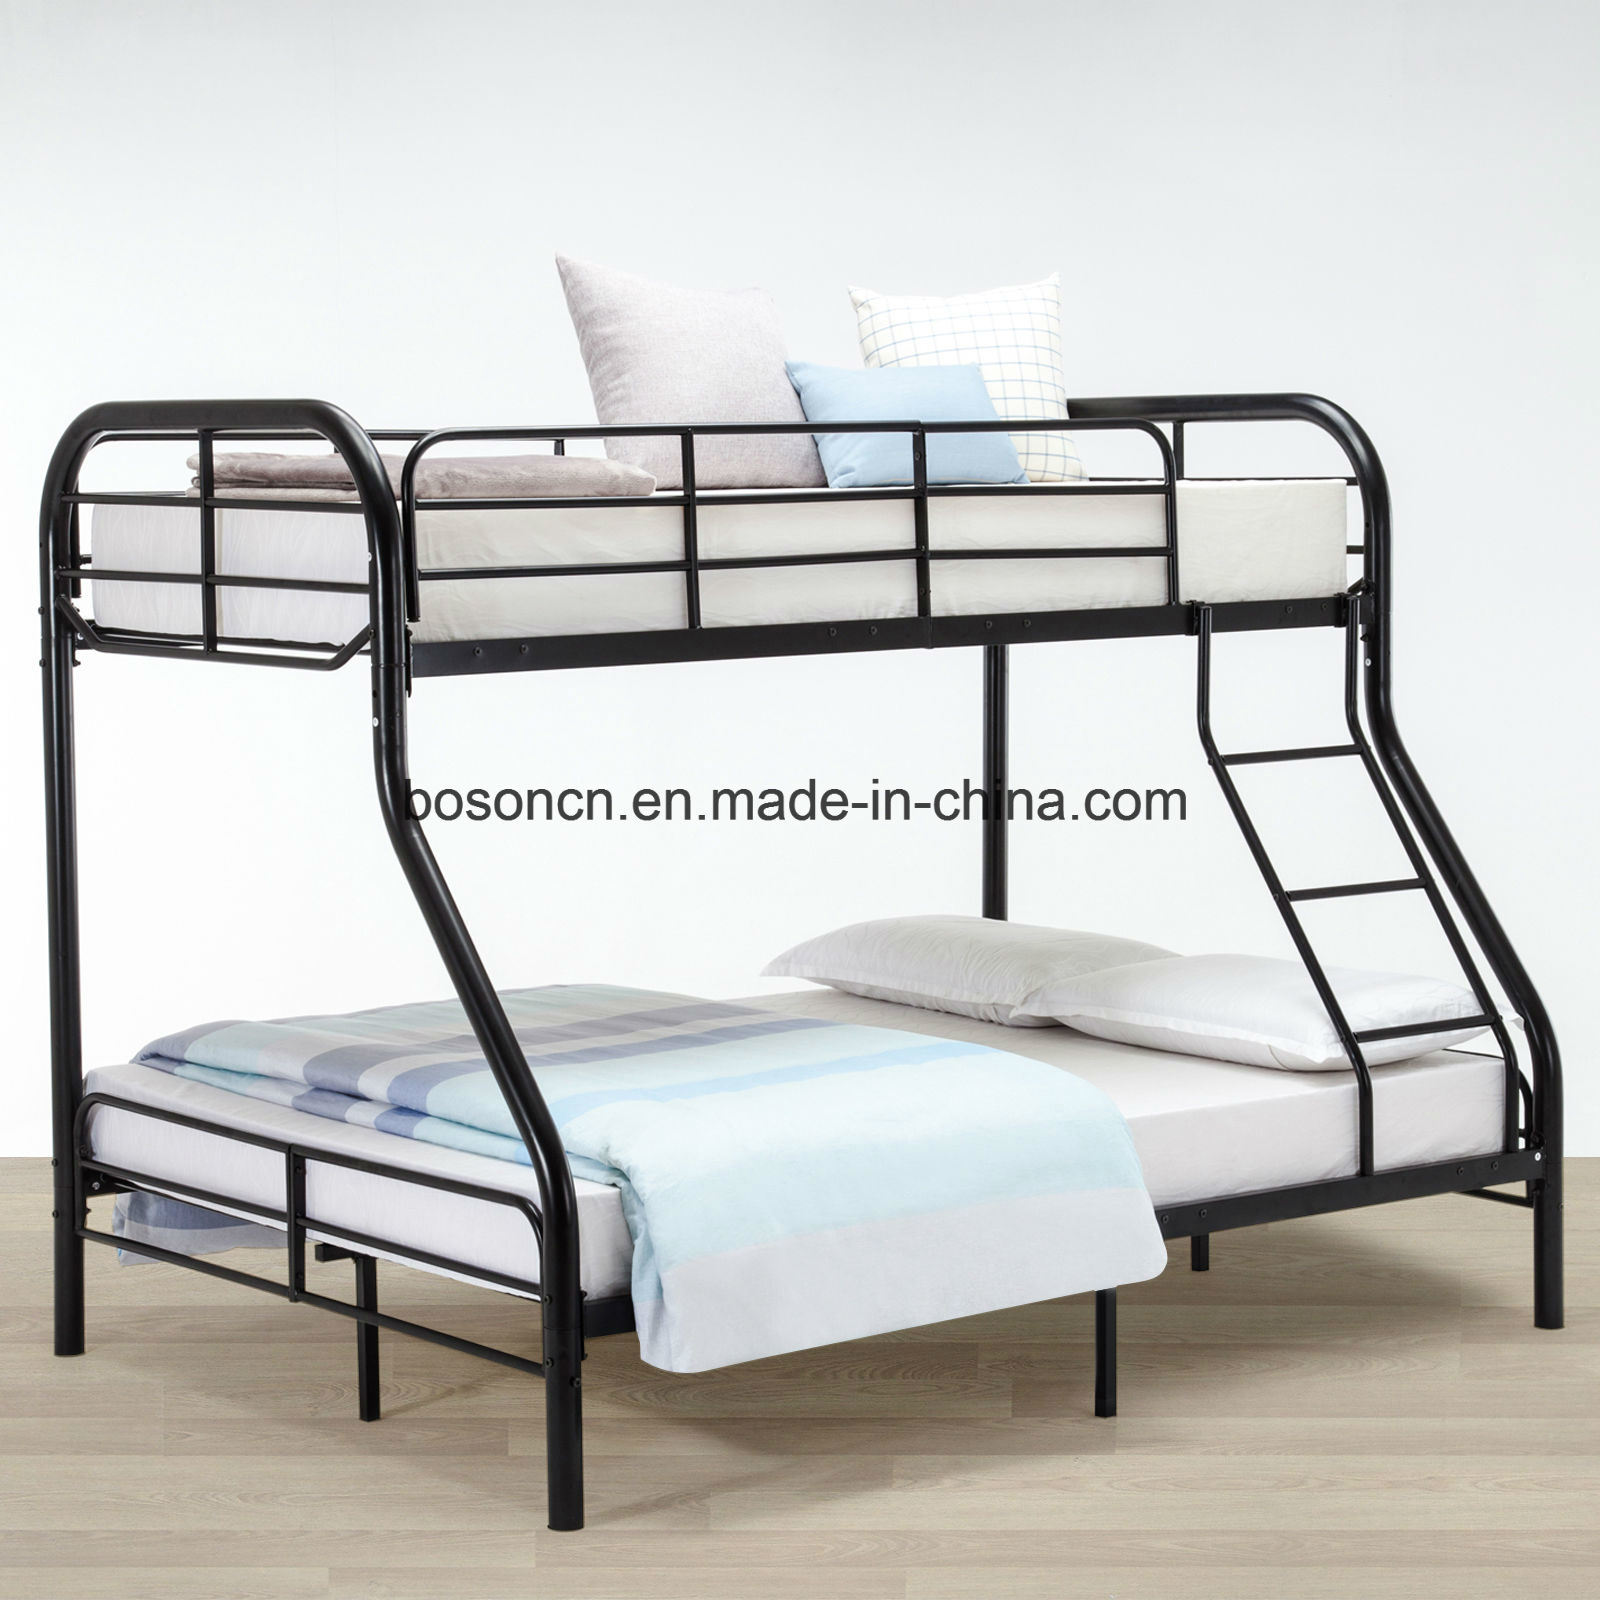 Hot Sale Bedroom Metal Bunk Bed